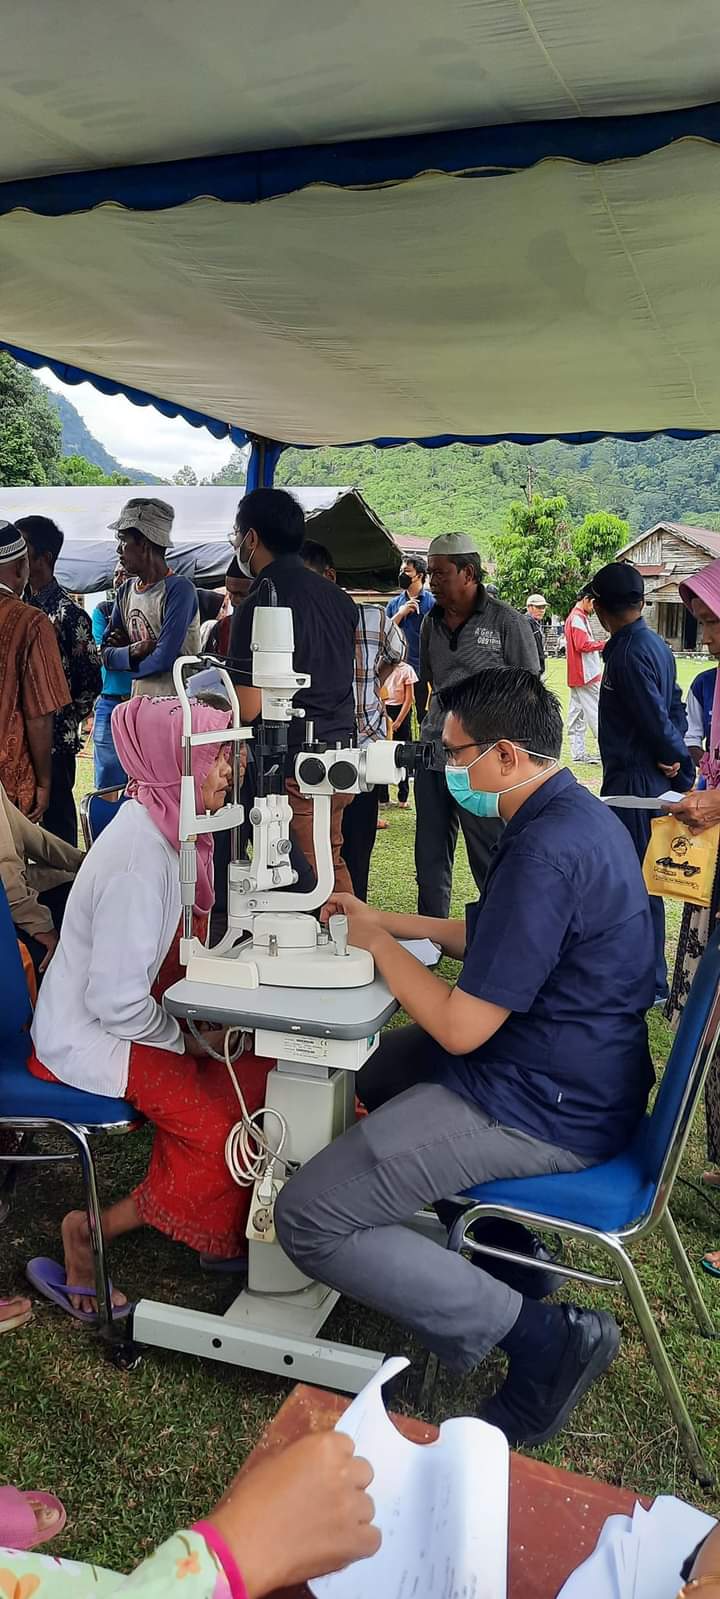 Bakti kesehatan pemeriksaan mata, pembagian kacamata dan penjaringan katarak di Nagari Sungai Pinang